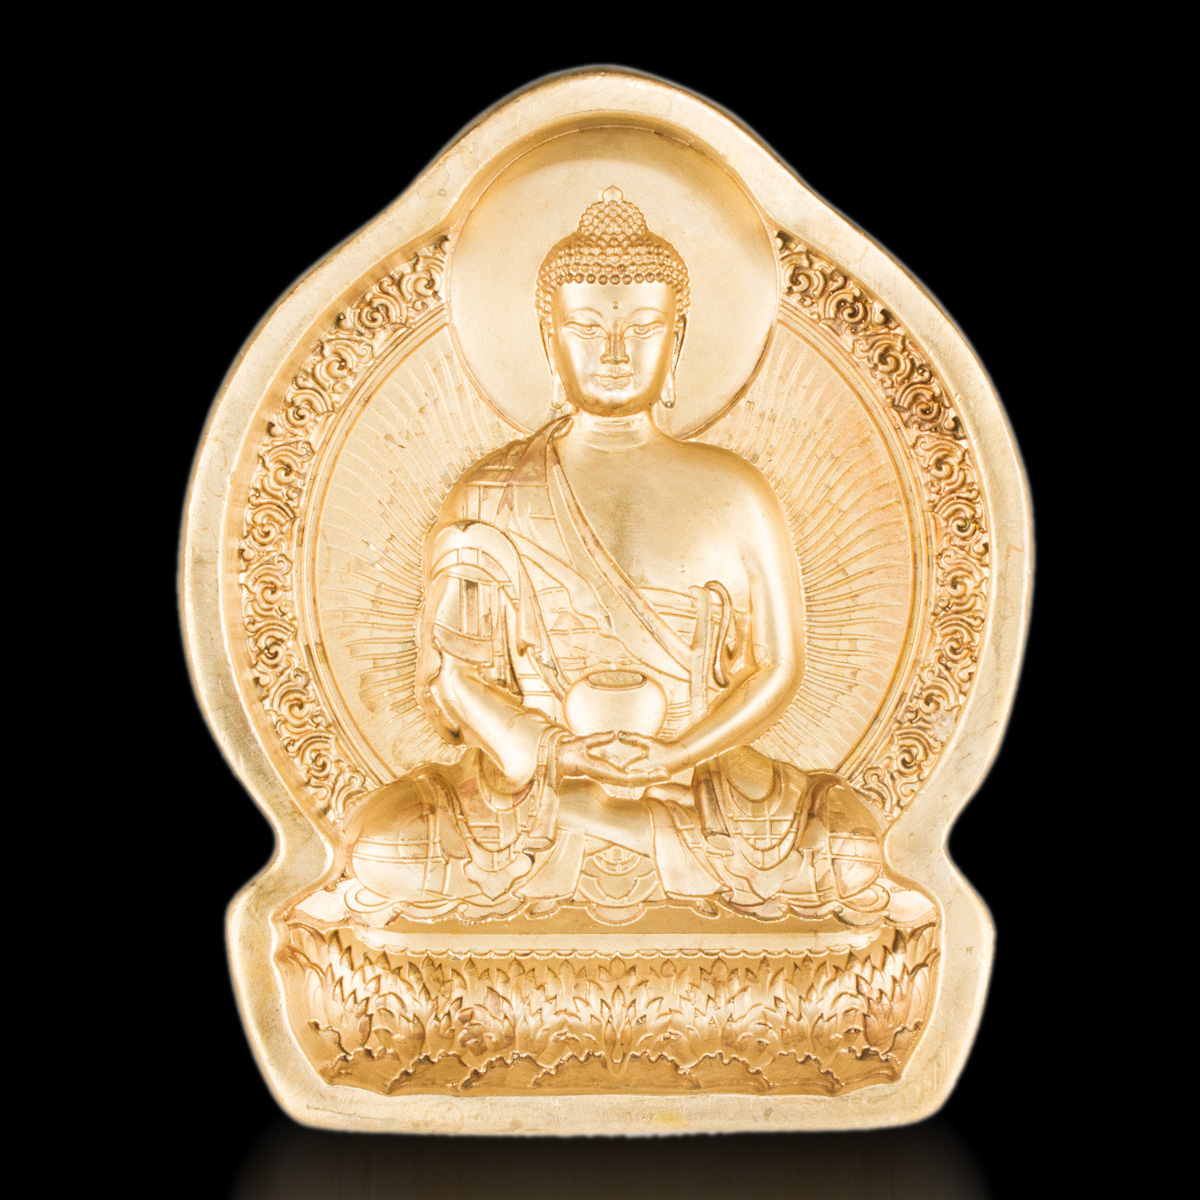 Форма для изготовления ца-ца Будда Амитабха (7,5 см x 9,5 см), 7,5 см x 9,5 см